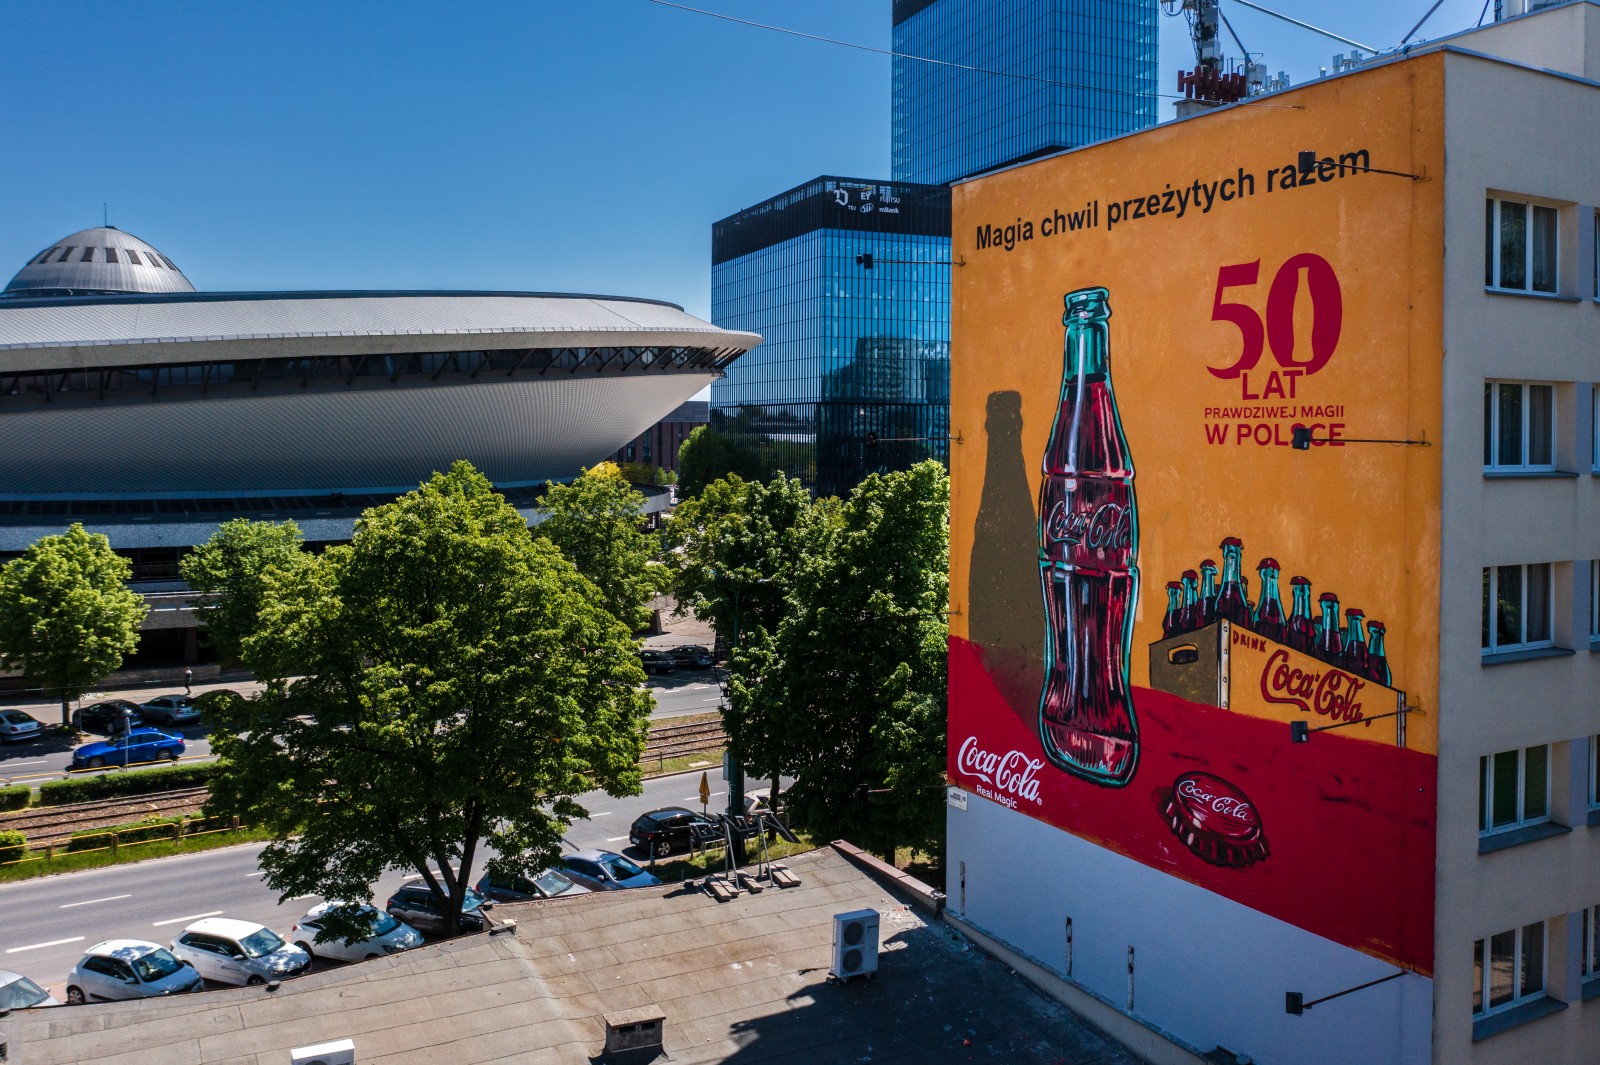 Mural reklamowy dla Coca-Coli na ulicy Francuskiej w Katowicach | 50 lat prawdziwej magii w Polsce (retro) | Portfolio